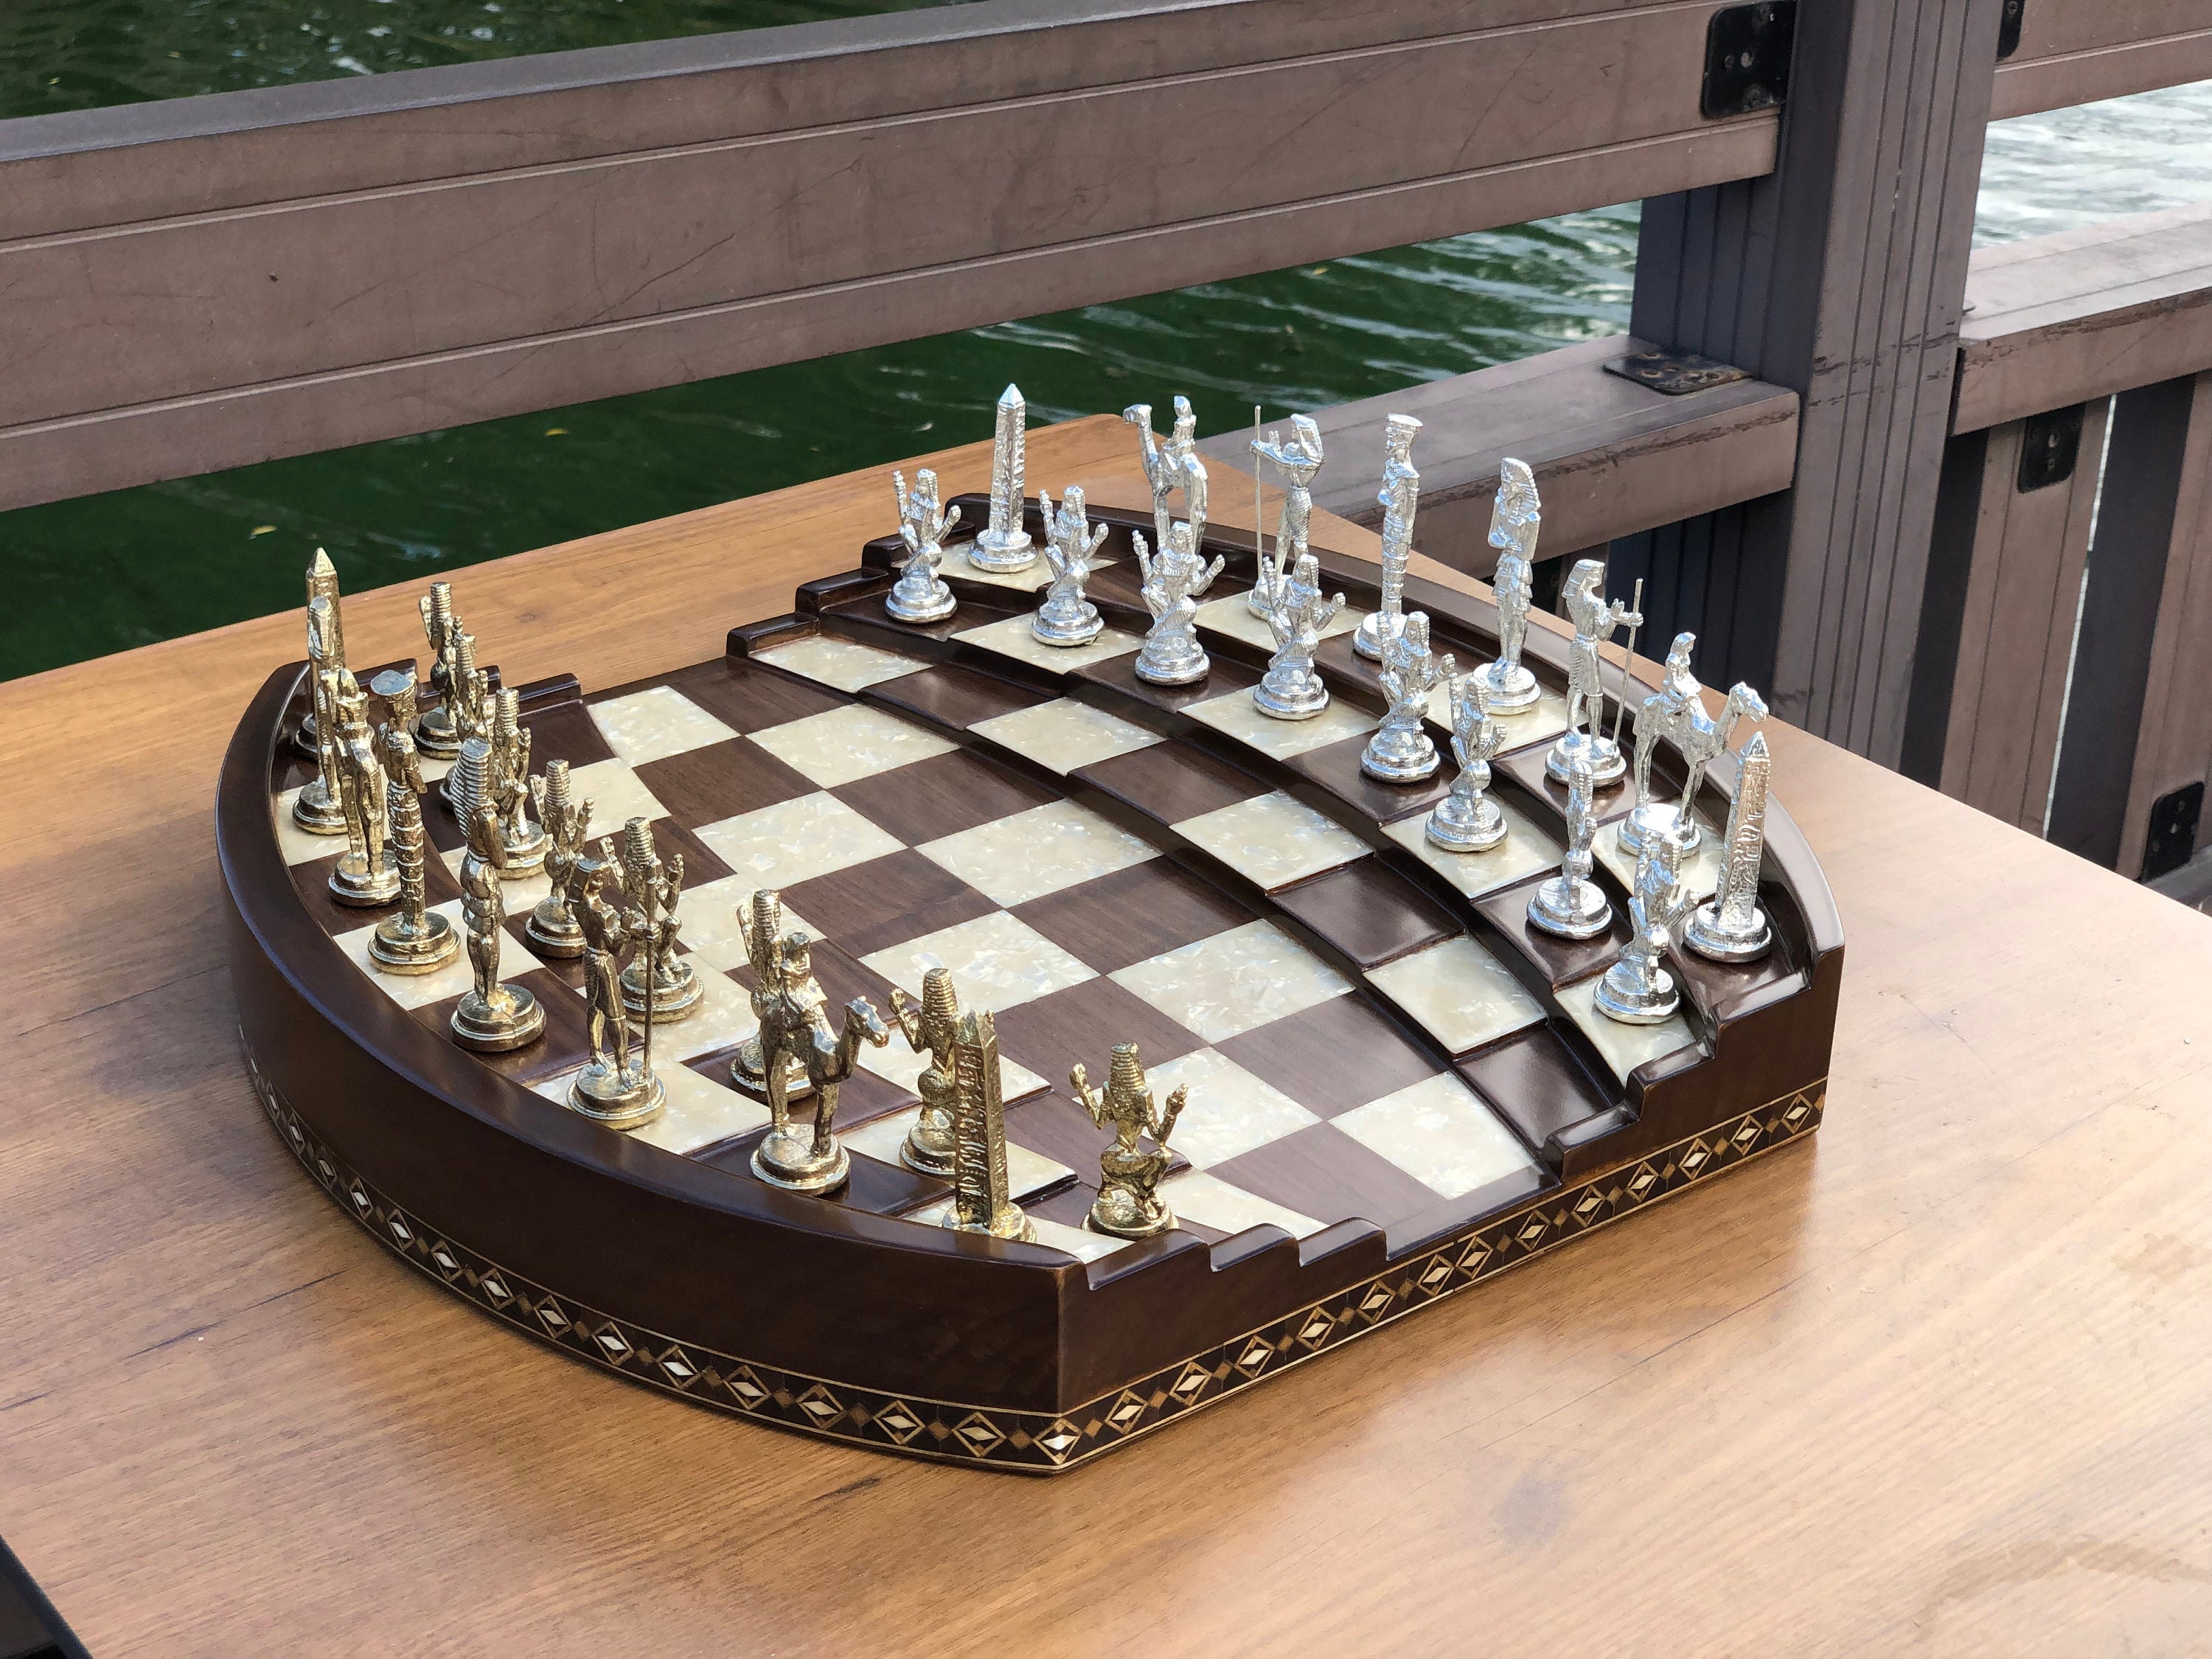 Arena Luxury Chess Set